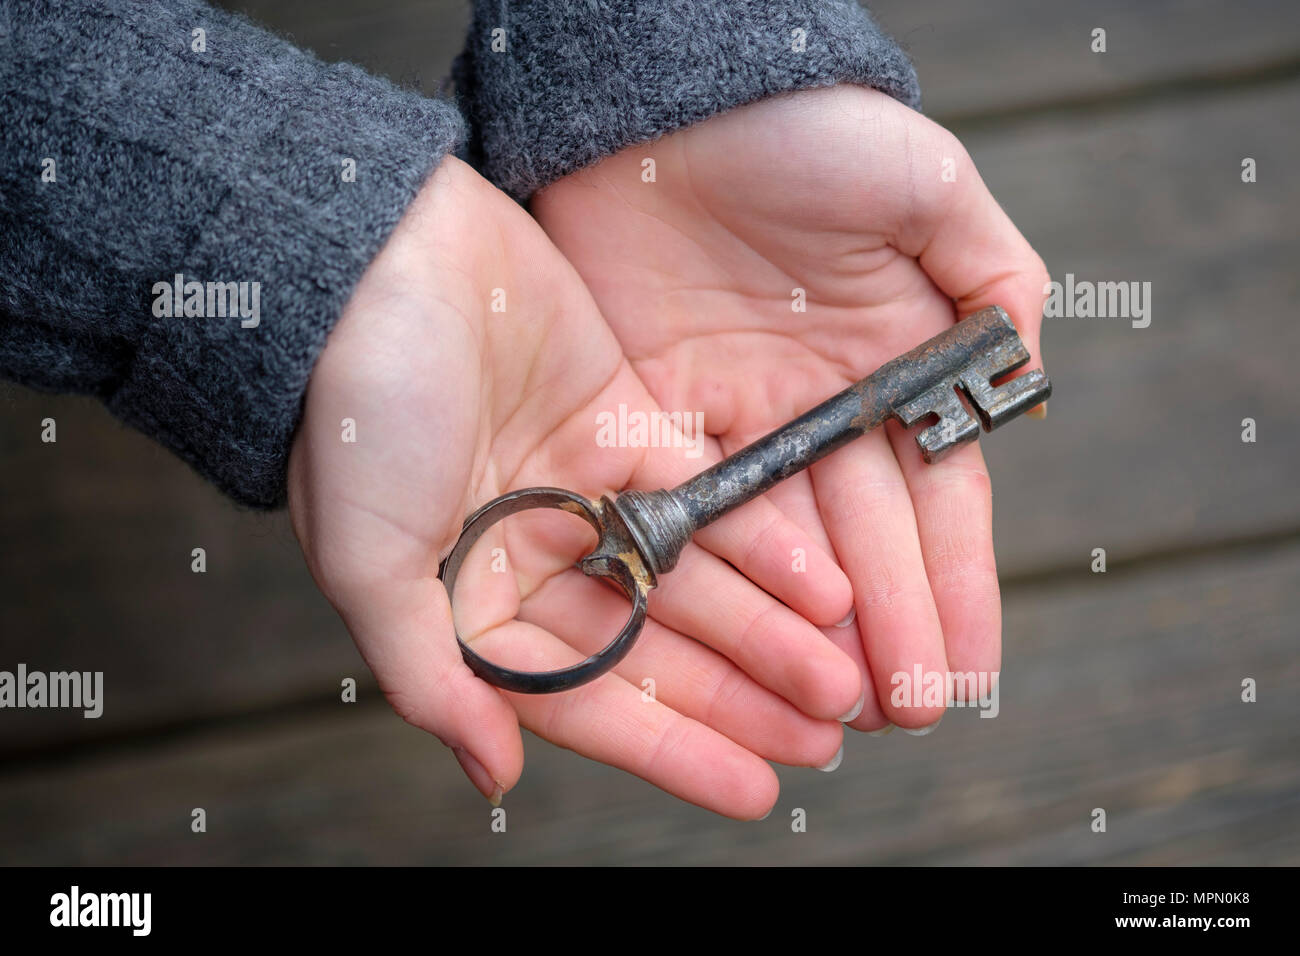 Mani tenendo una vecchia chiave, close-up Foto Stock